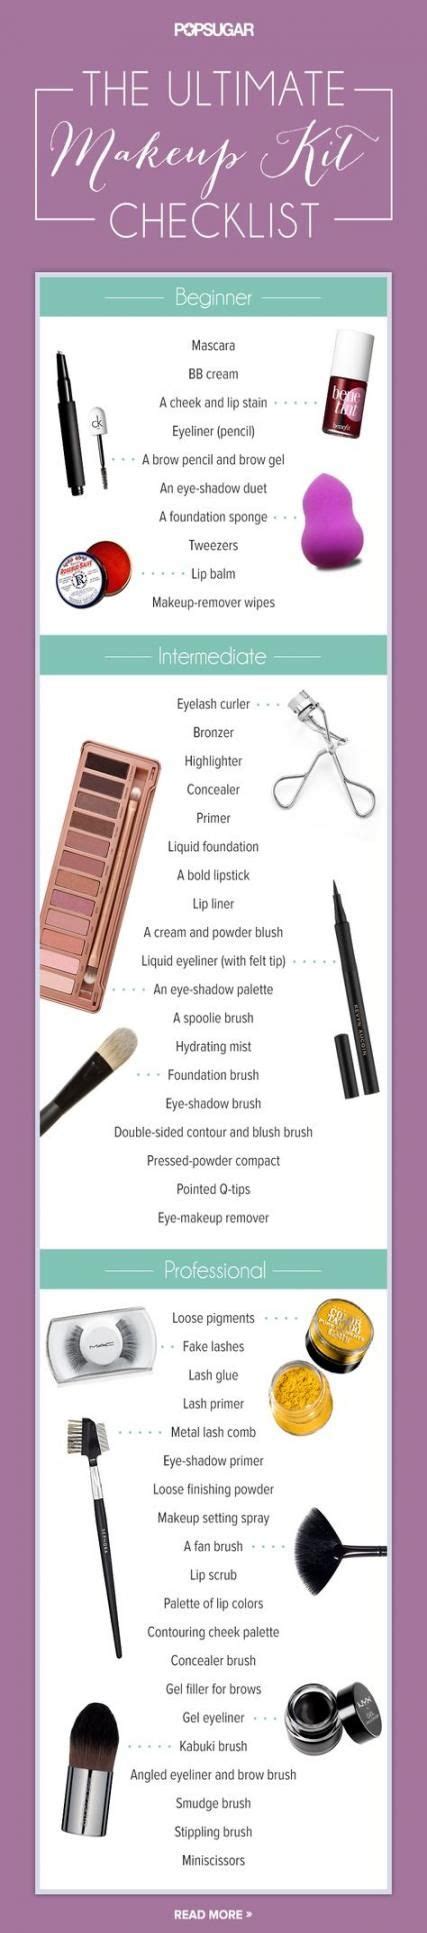 62 Ideas Makeup Artist Kit Checklist Make Up Makeup Artist Kit